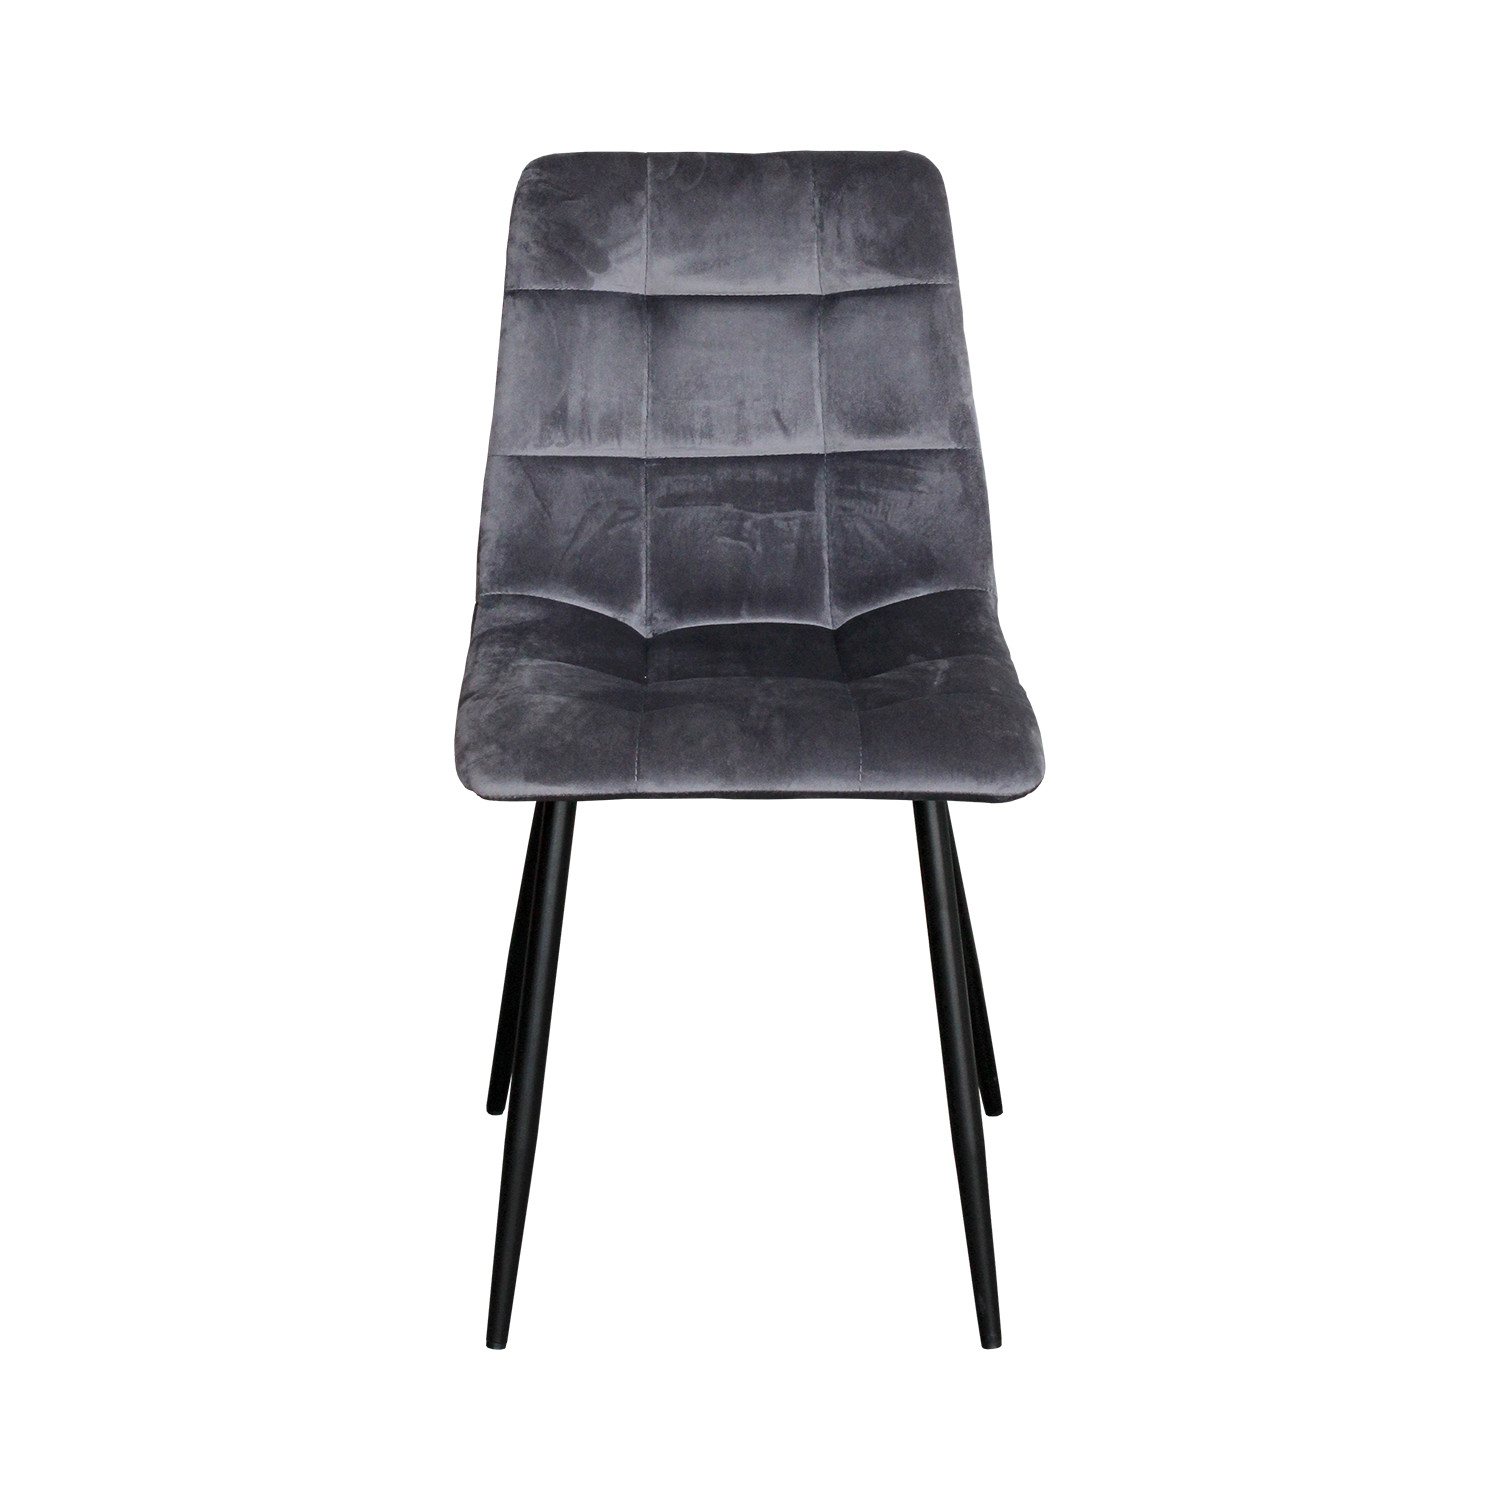 IDEA обеденный стул BERGEN серый бархат